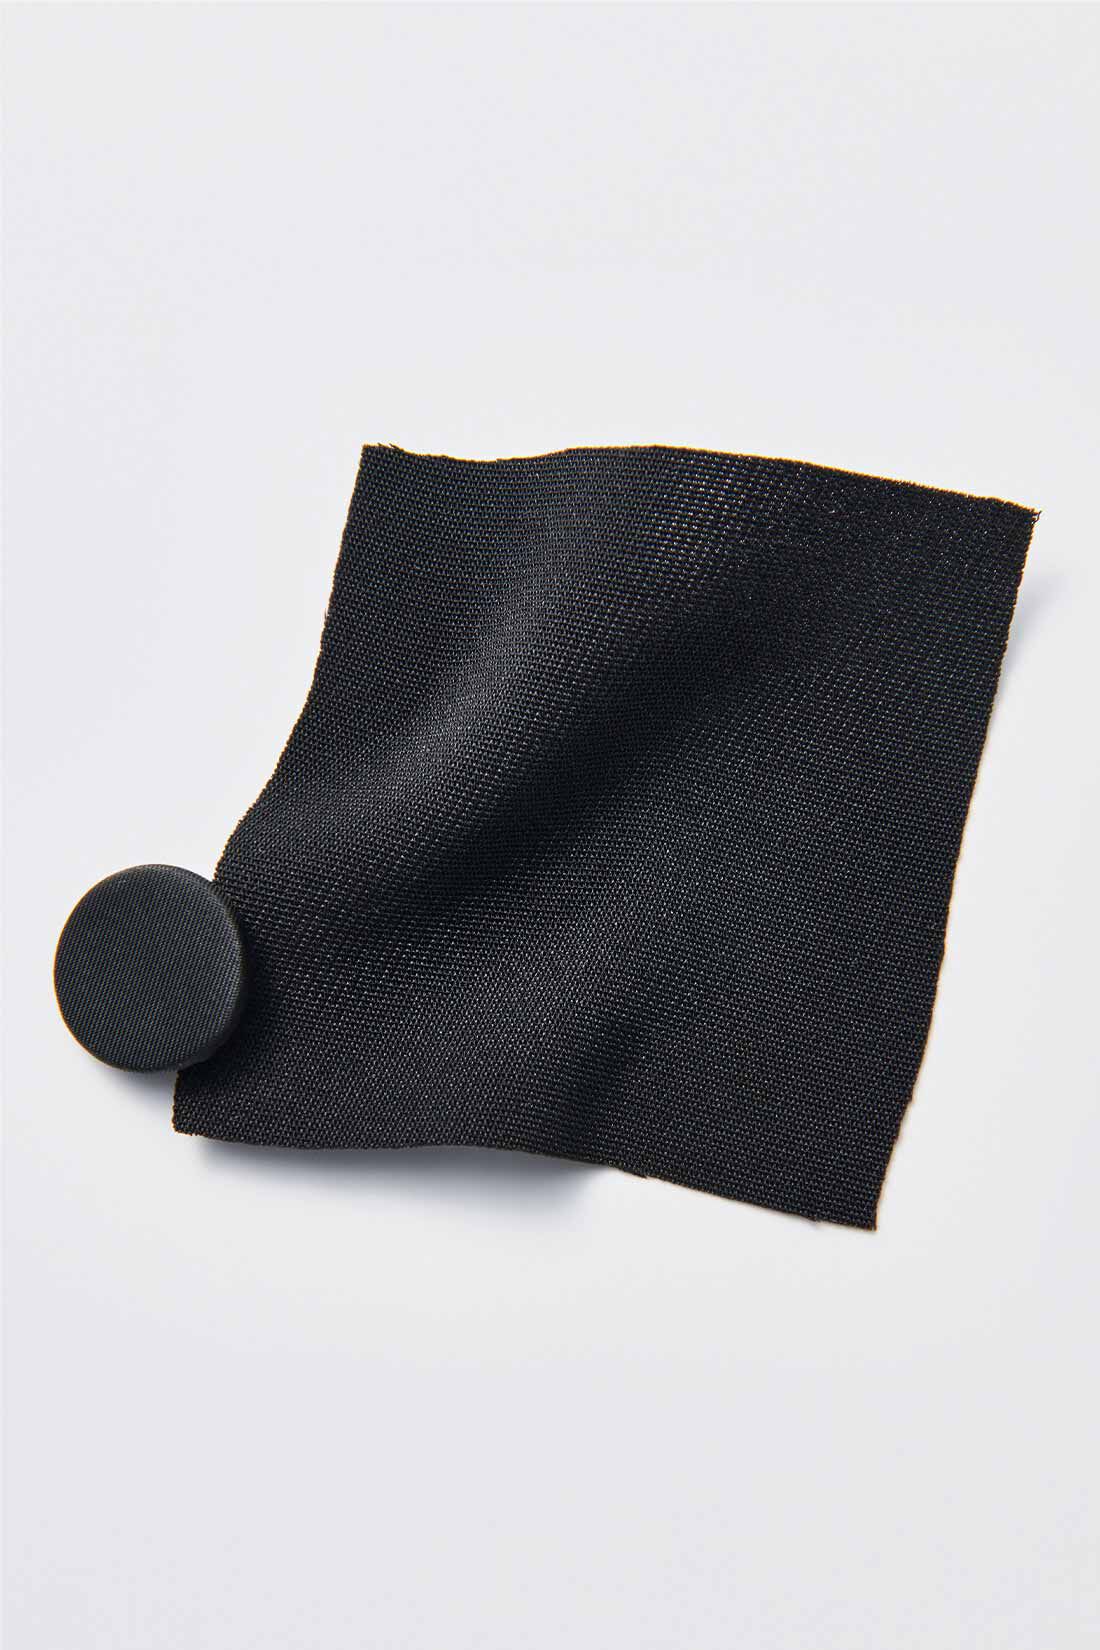 MEDE19F|MEDE19F　高山都さんコラボ スリーブレスジャケット〈ブラック〉|マットな光沢が上品なポリエステルのダブルクロス素材。しわが気になりにくくケアも簡単。